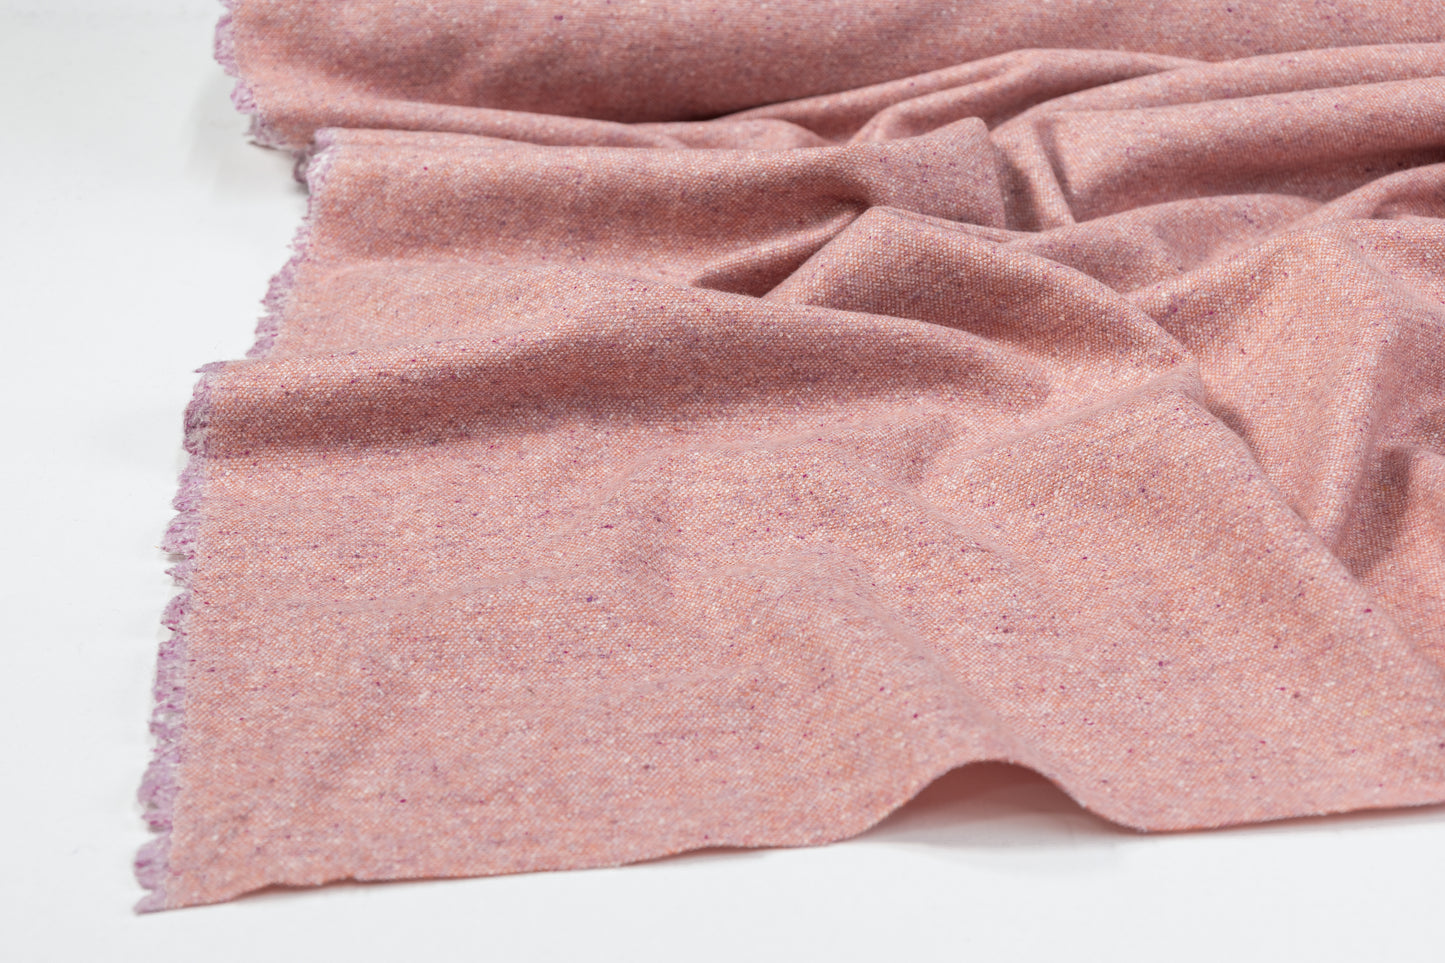 Wool Tweed Suiting - Pink